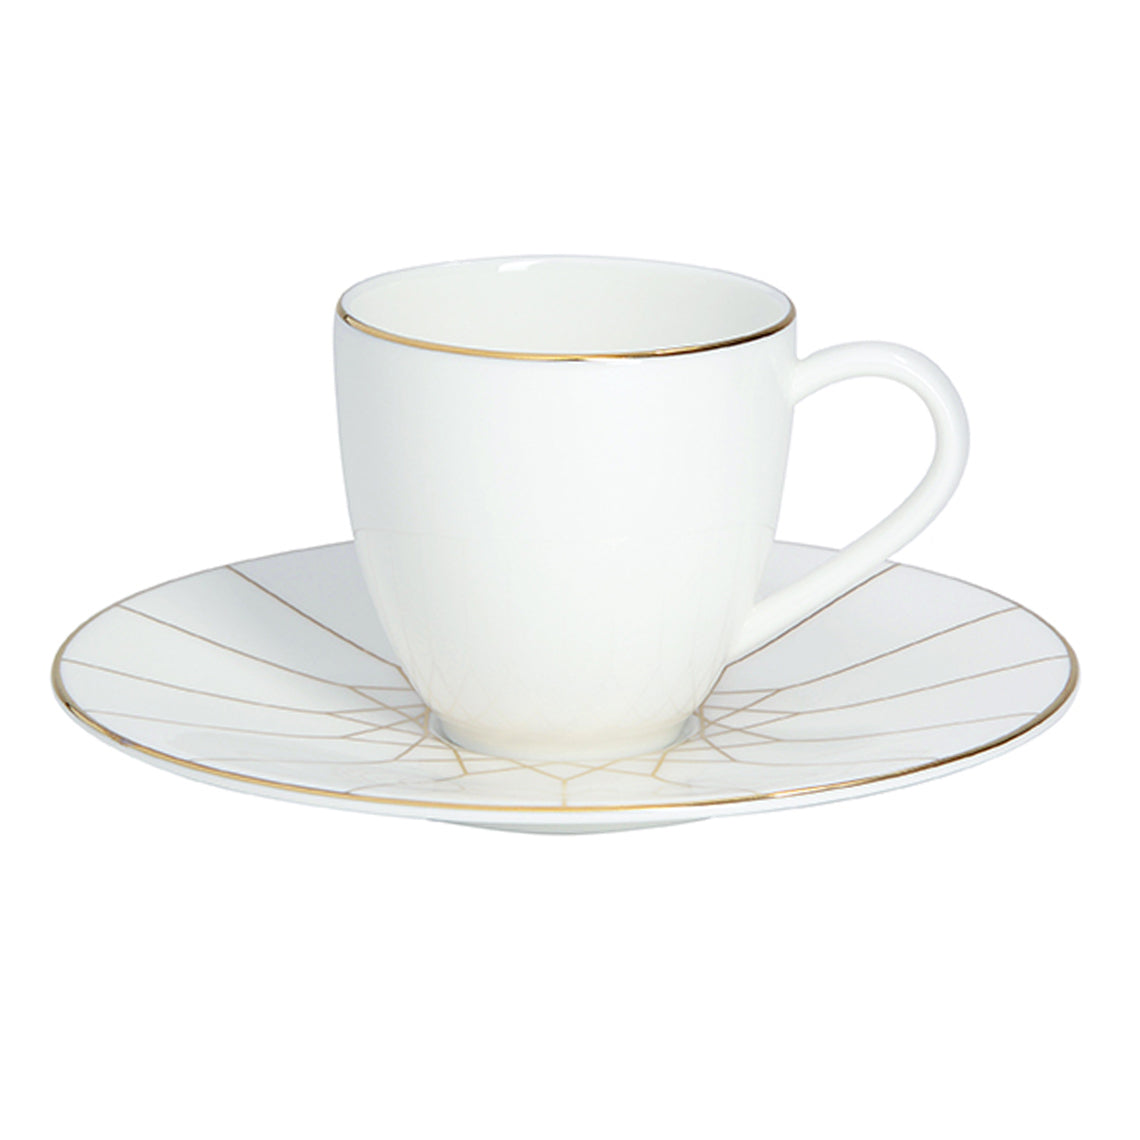 Prouna Gem Cut Gold Espresso Cup & Saucer White Background Photo